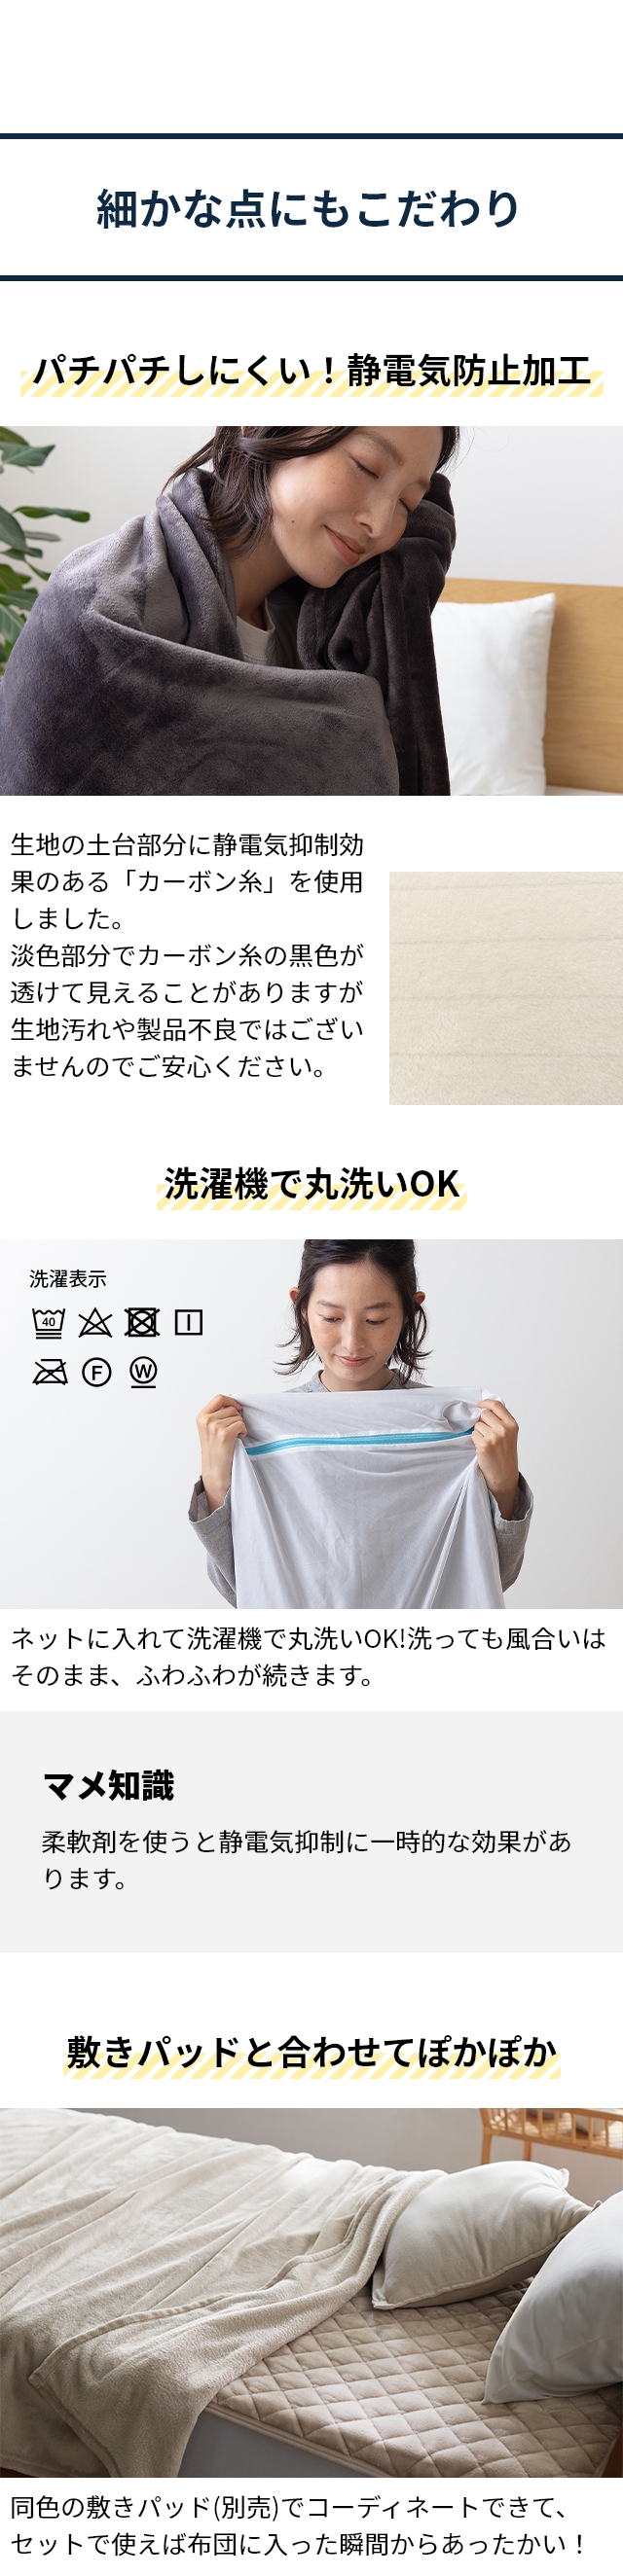 mofua (モフア) プレミアムマイクロファイバー 毛布 S シングル